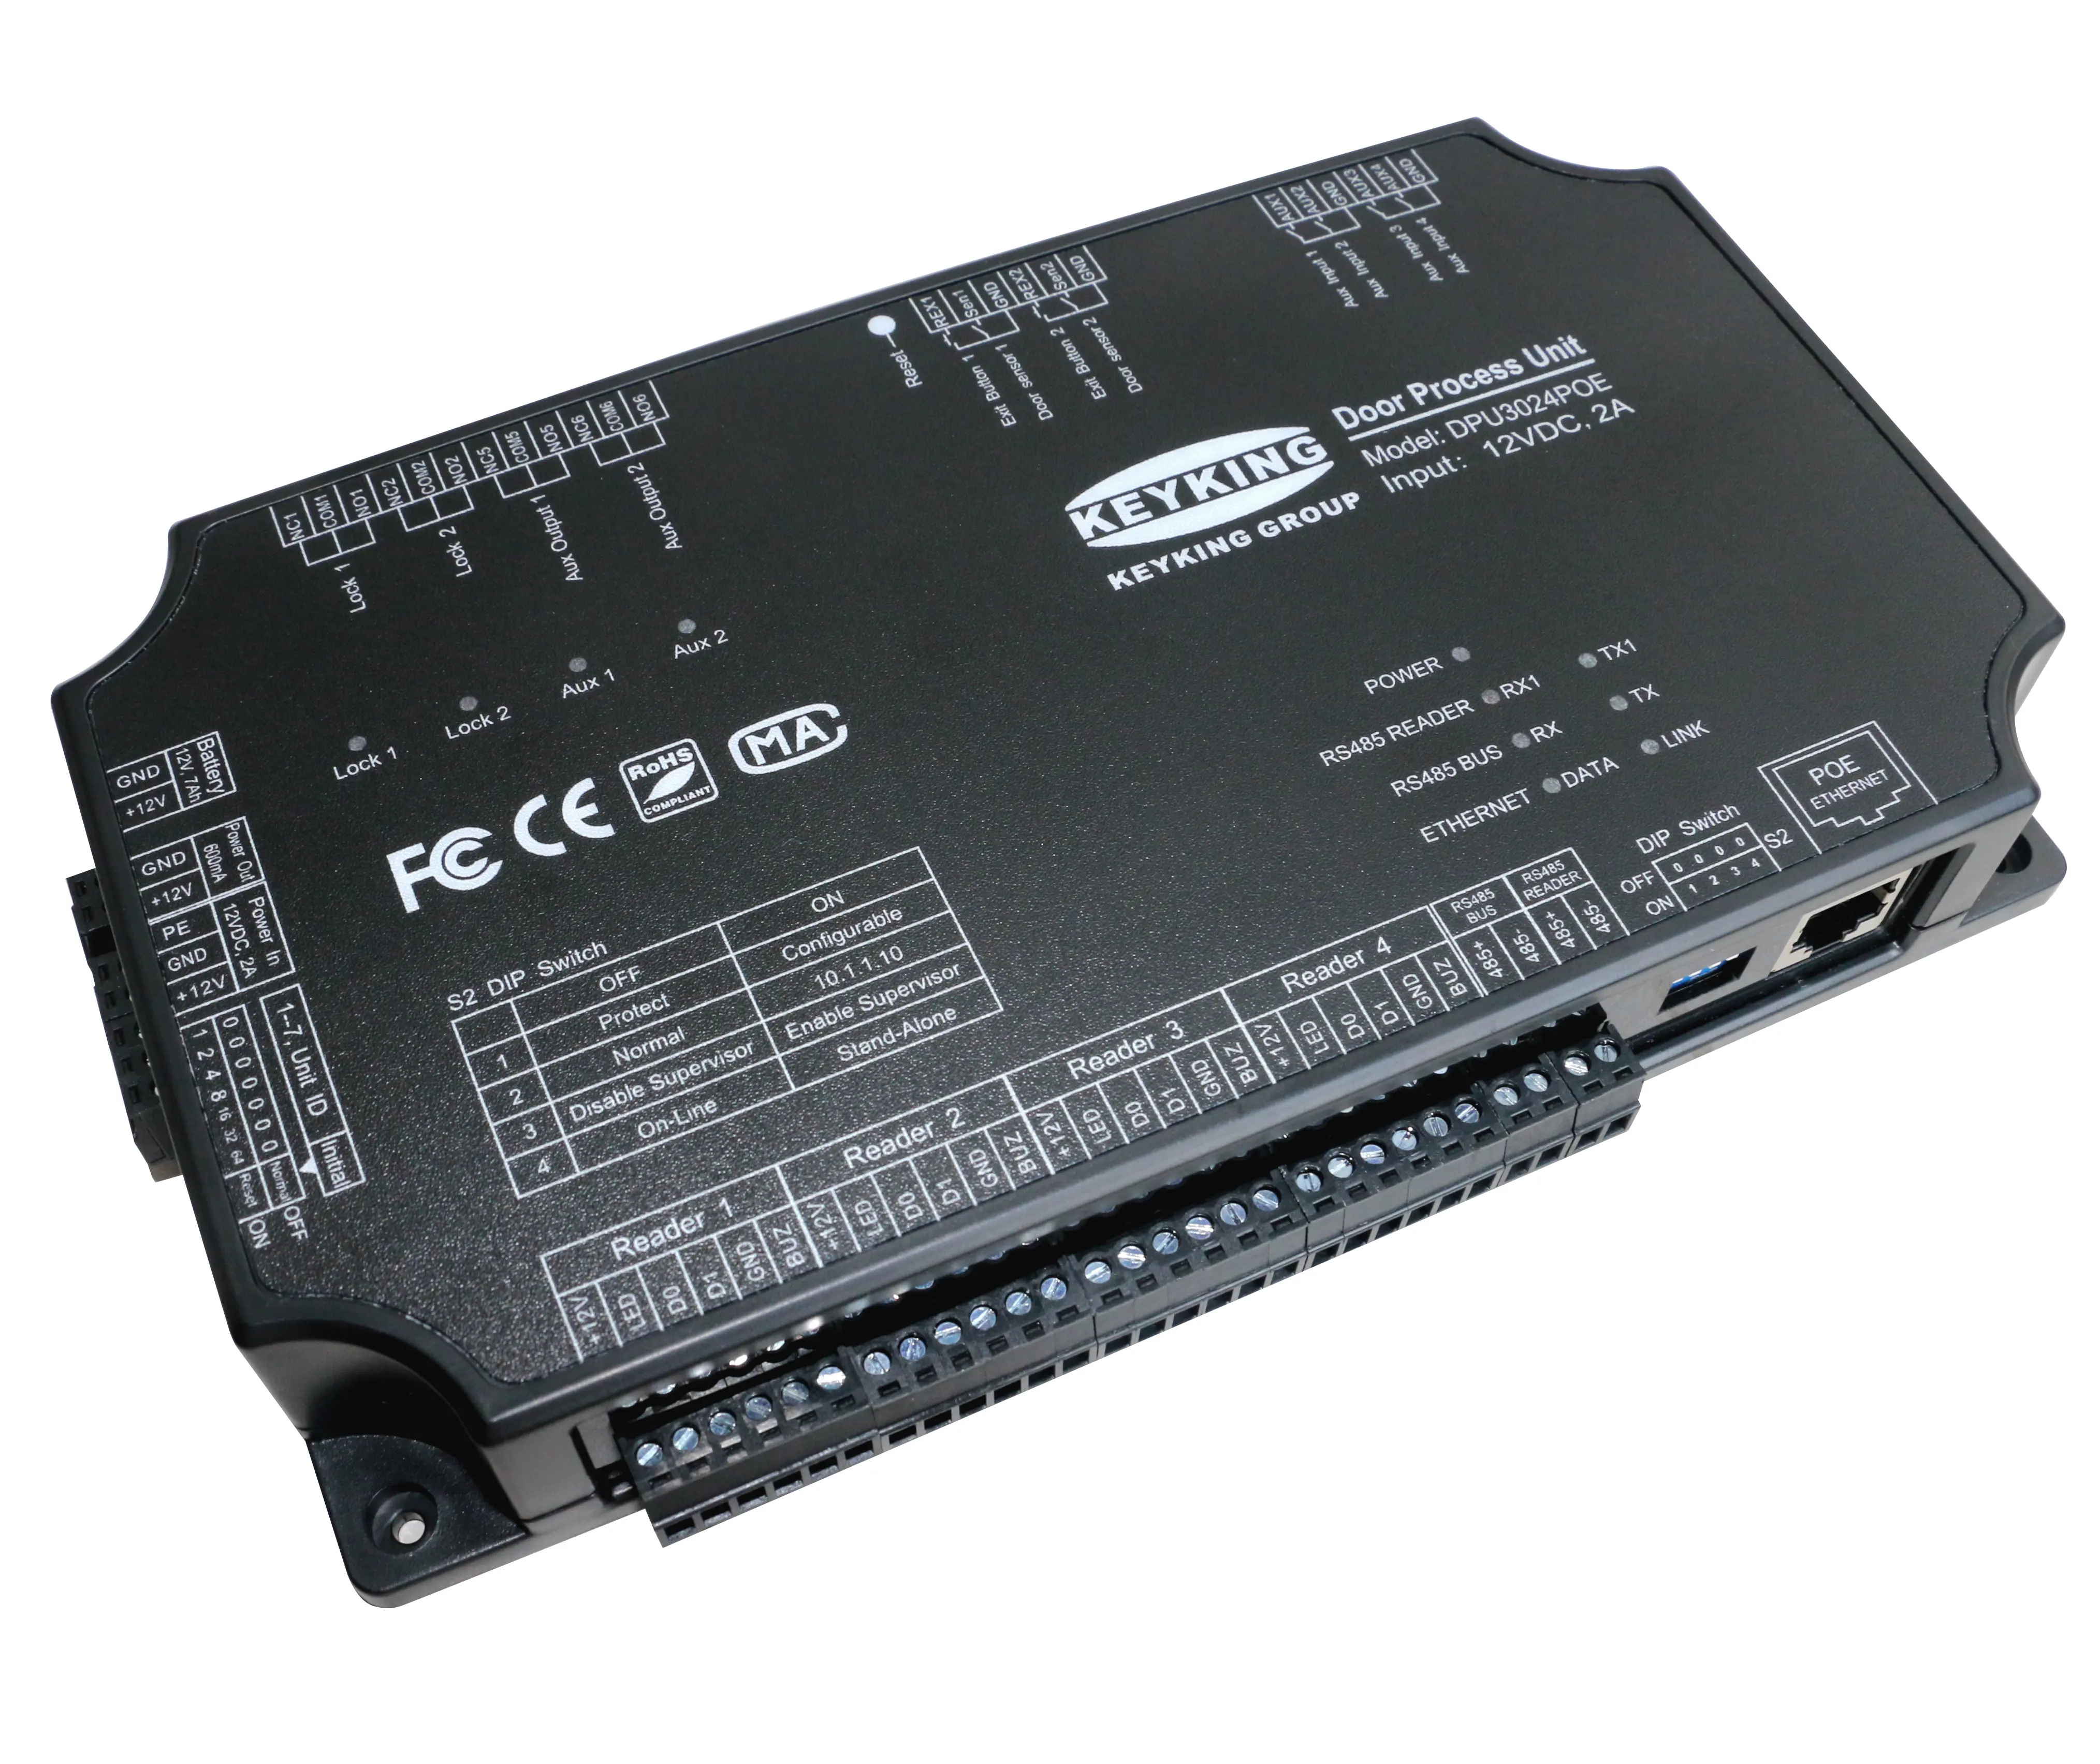 KeyKing TCP IP Wiegand RS485 панель управления доступом контроллер платы двухдверный контроллер